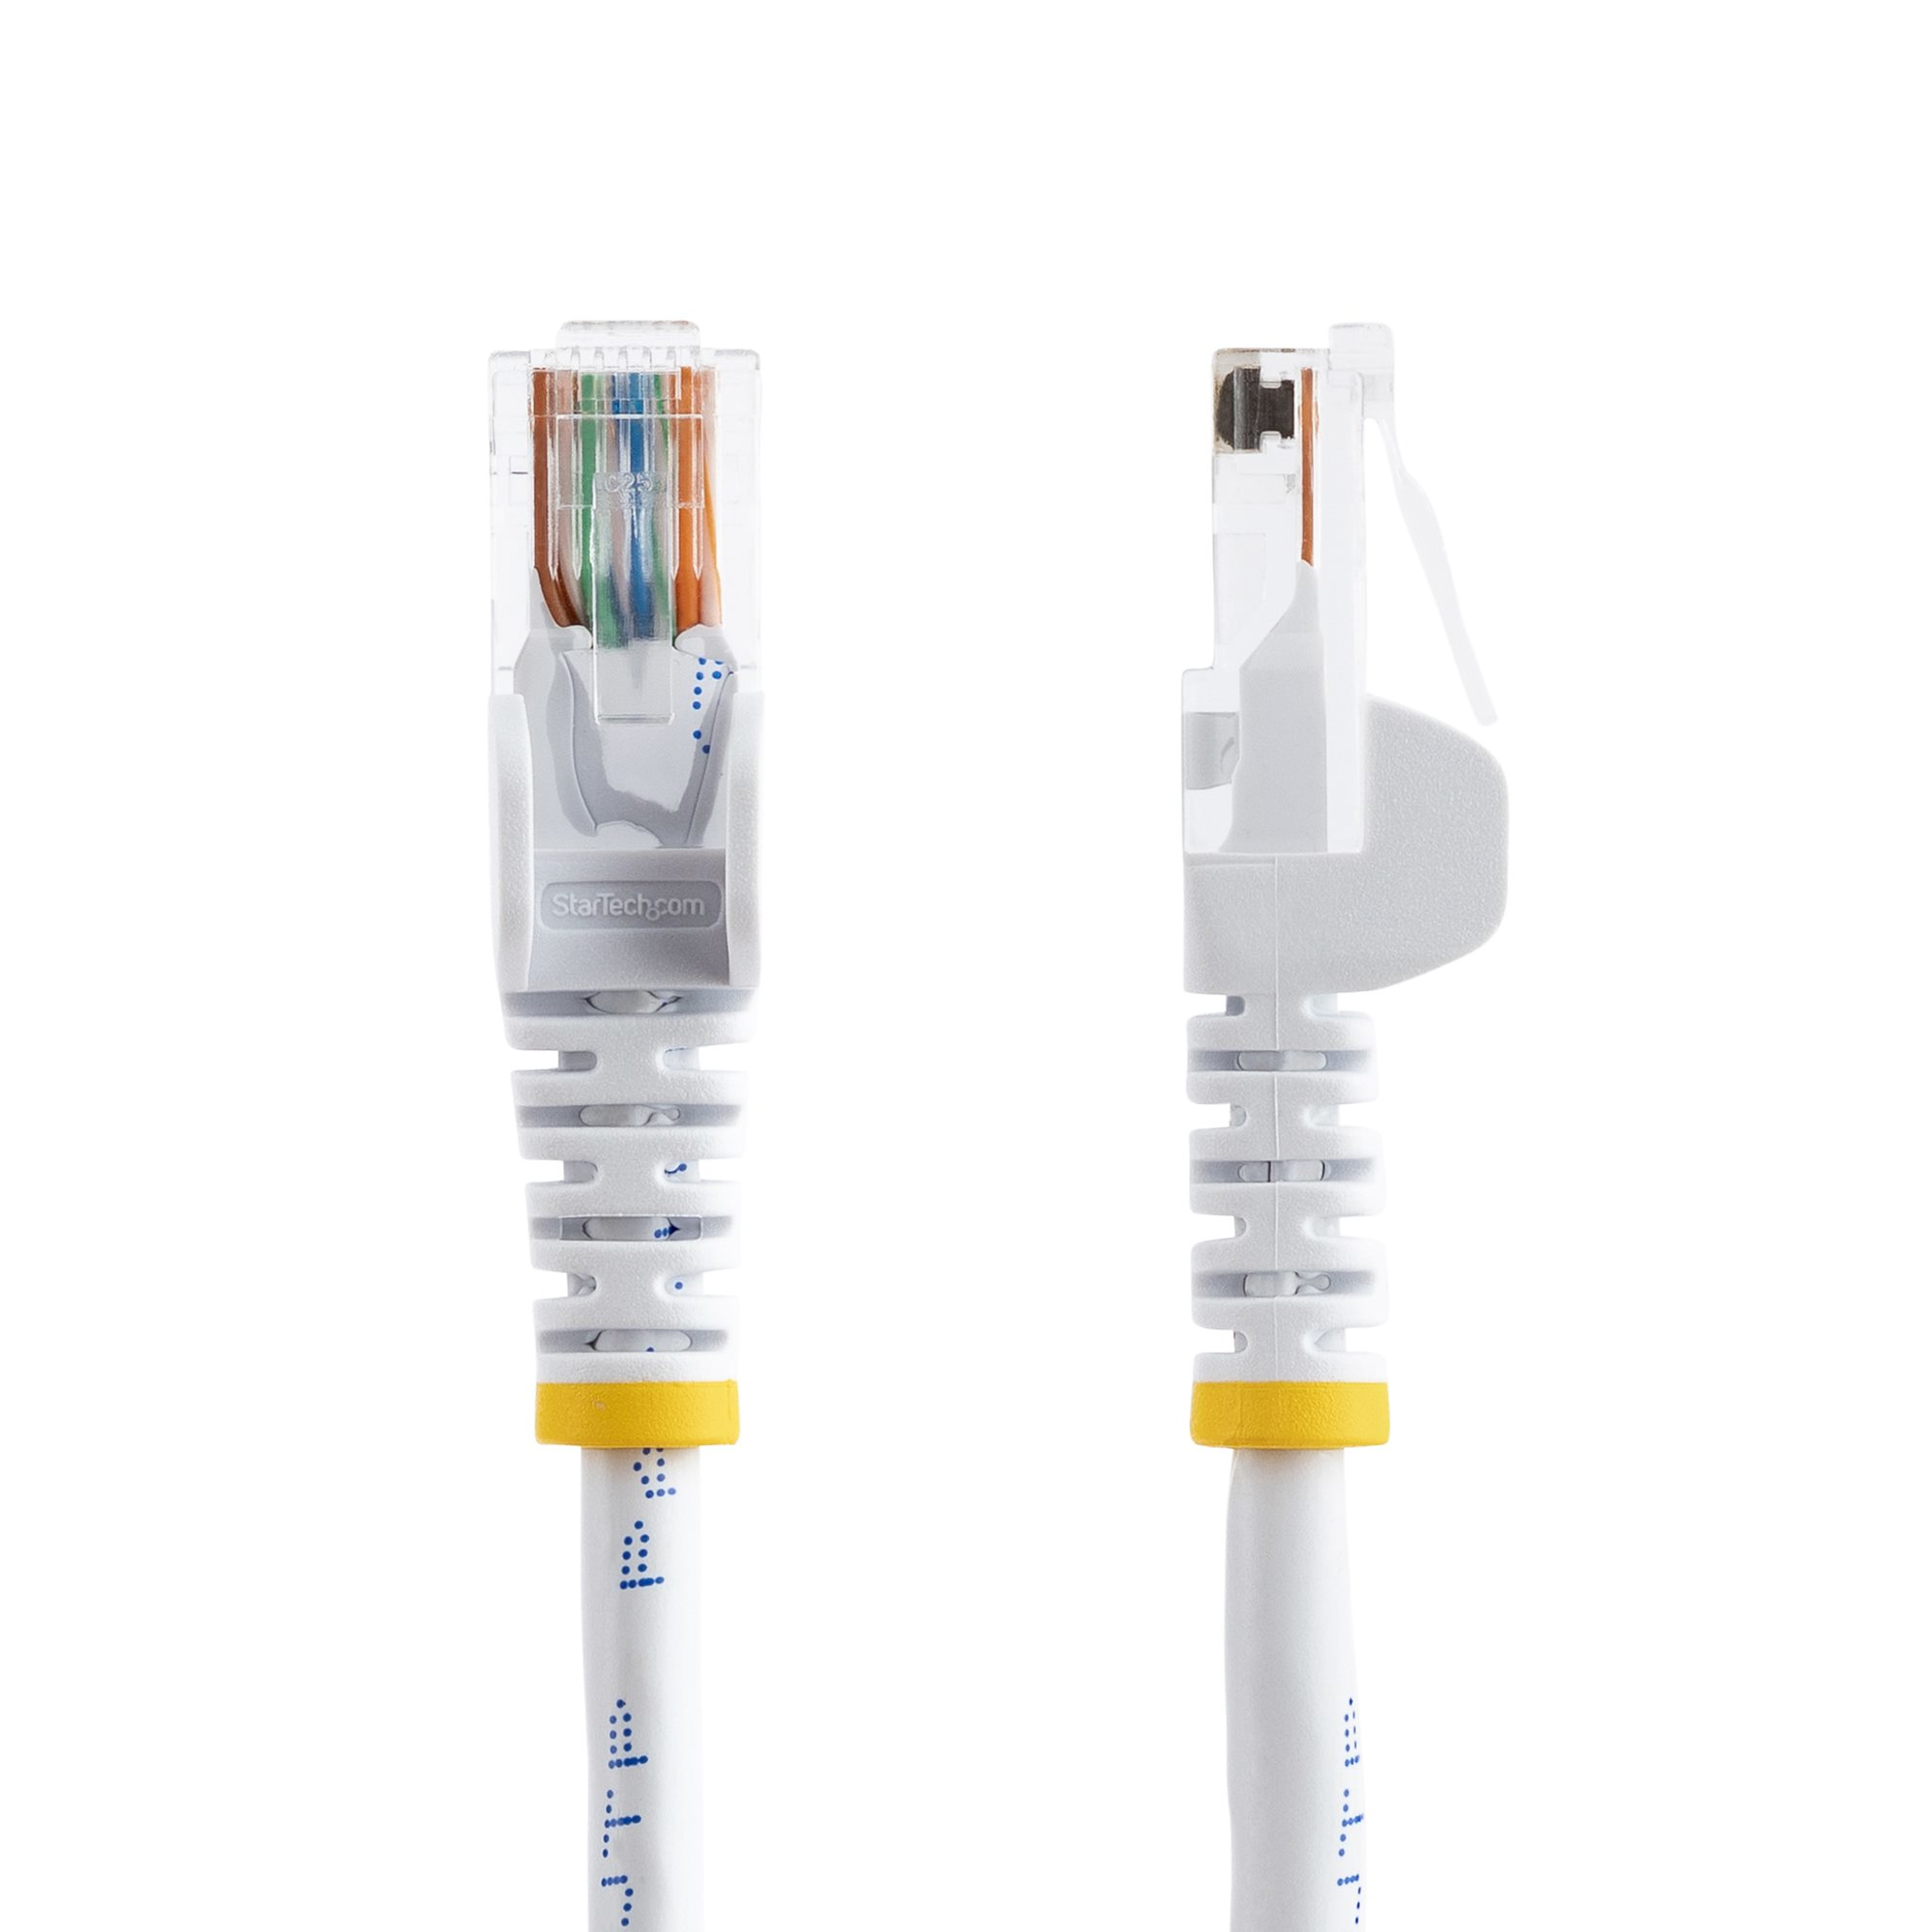 StarTech.com 0,5m Cat5e Ethernet Netzwerkkabel Snagless mit RJ45 - Cat 5e UTP Kabel - Weiß - Patch-Kabel - RJ-45 (M)